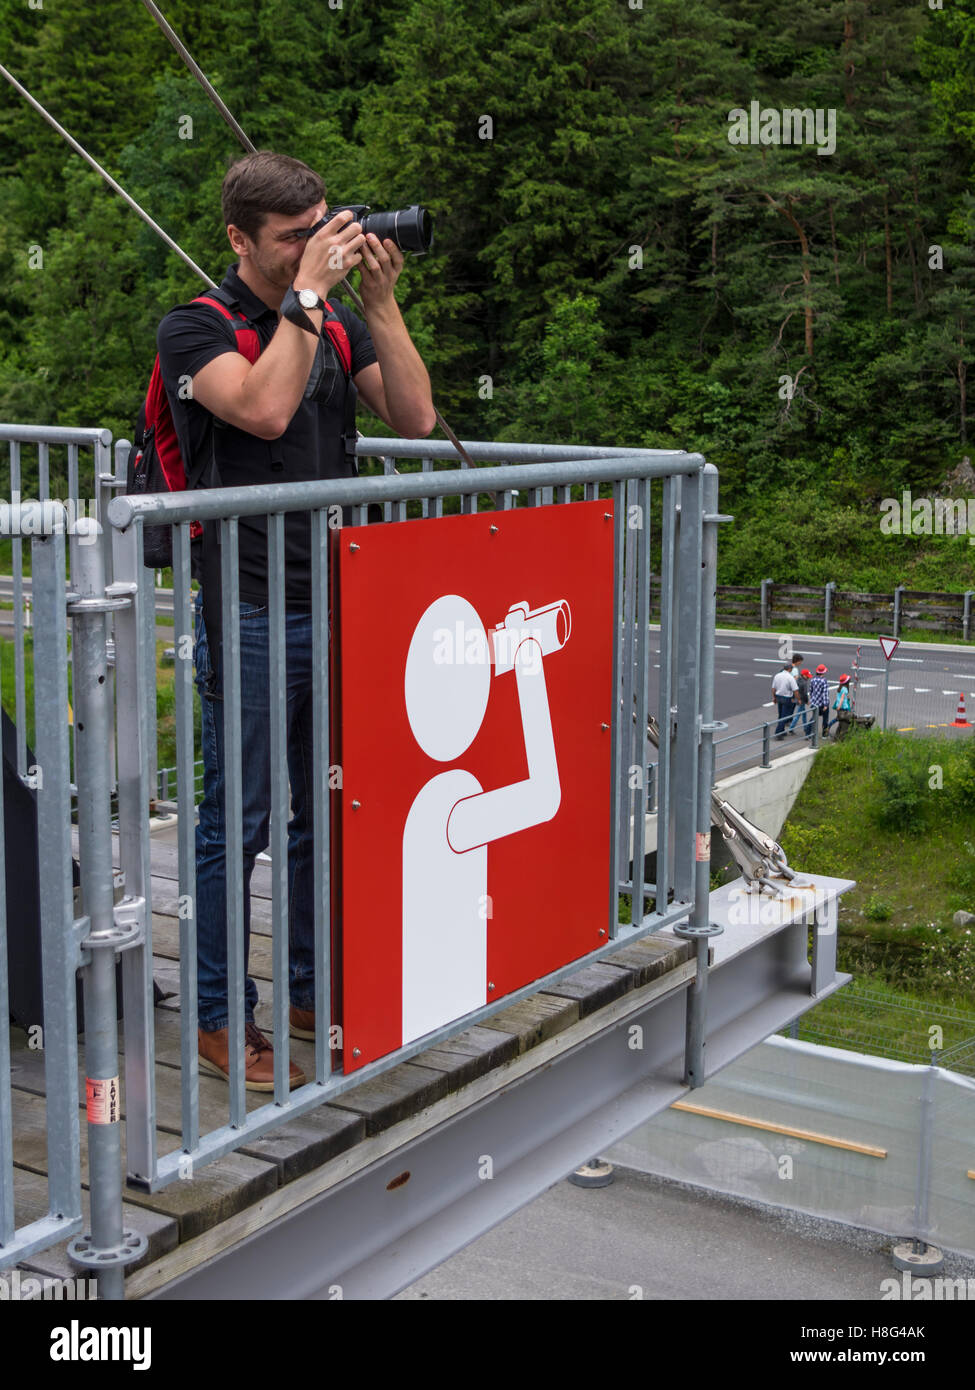 Junge Kaukasischen Männchen eine Aufnahme mit seiner Kamera von einem Aussichtspunkt mit einem großen Blickwinkel-Schild gekennzeichnet. Kanton Uri, Schweiz. Stockfoto